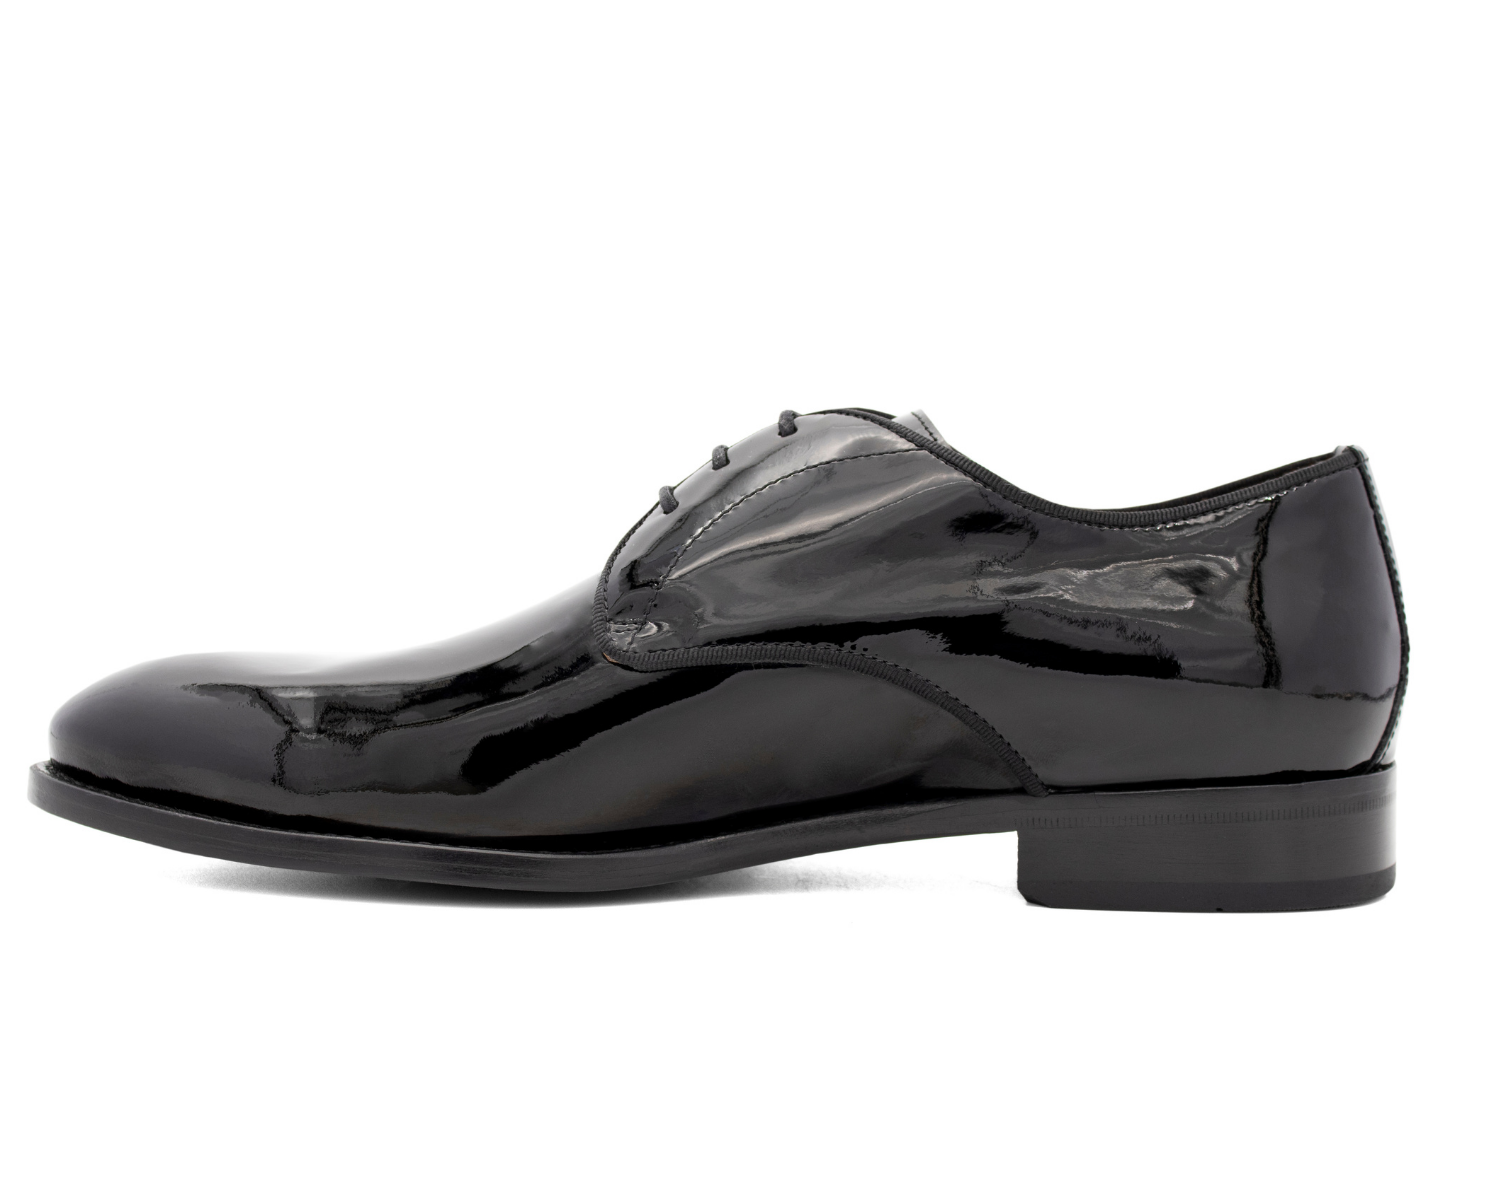 #color_ Black | Cavalinho Patent Leather Oxford Shoes - Black - 4_e30d424b-9f53-4789-8427-22088651dce4